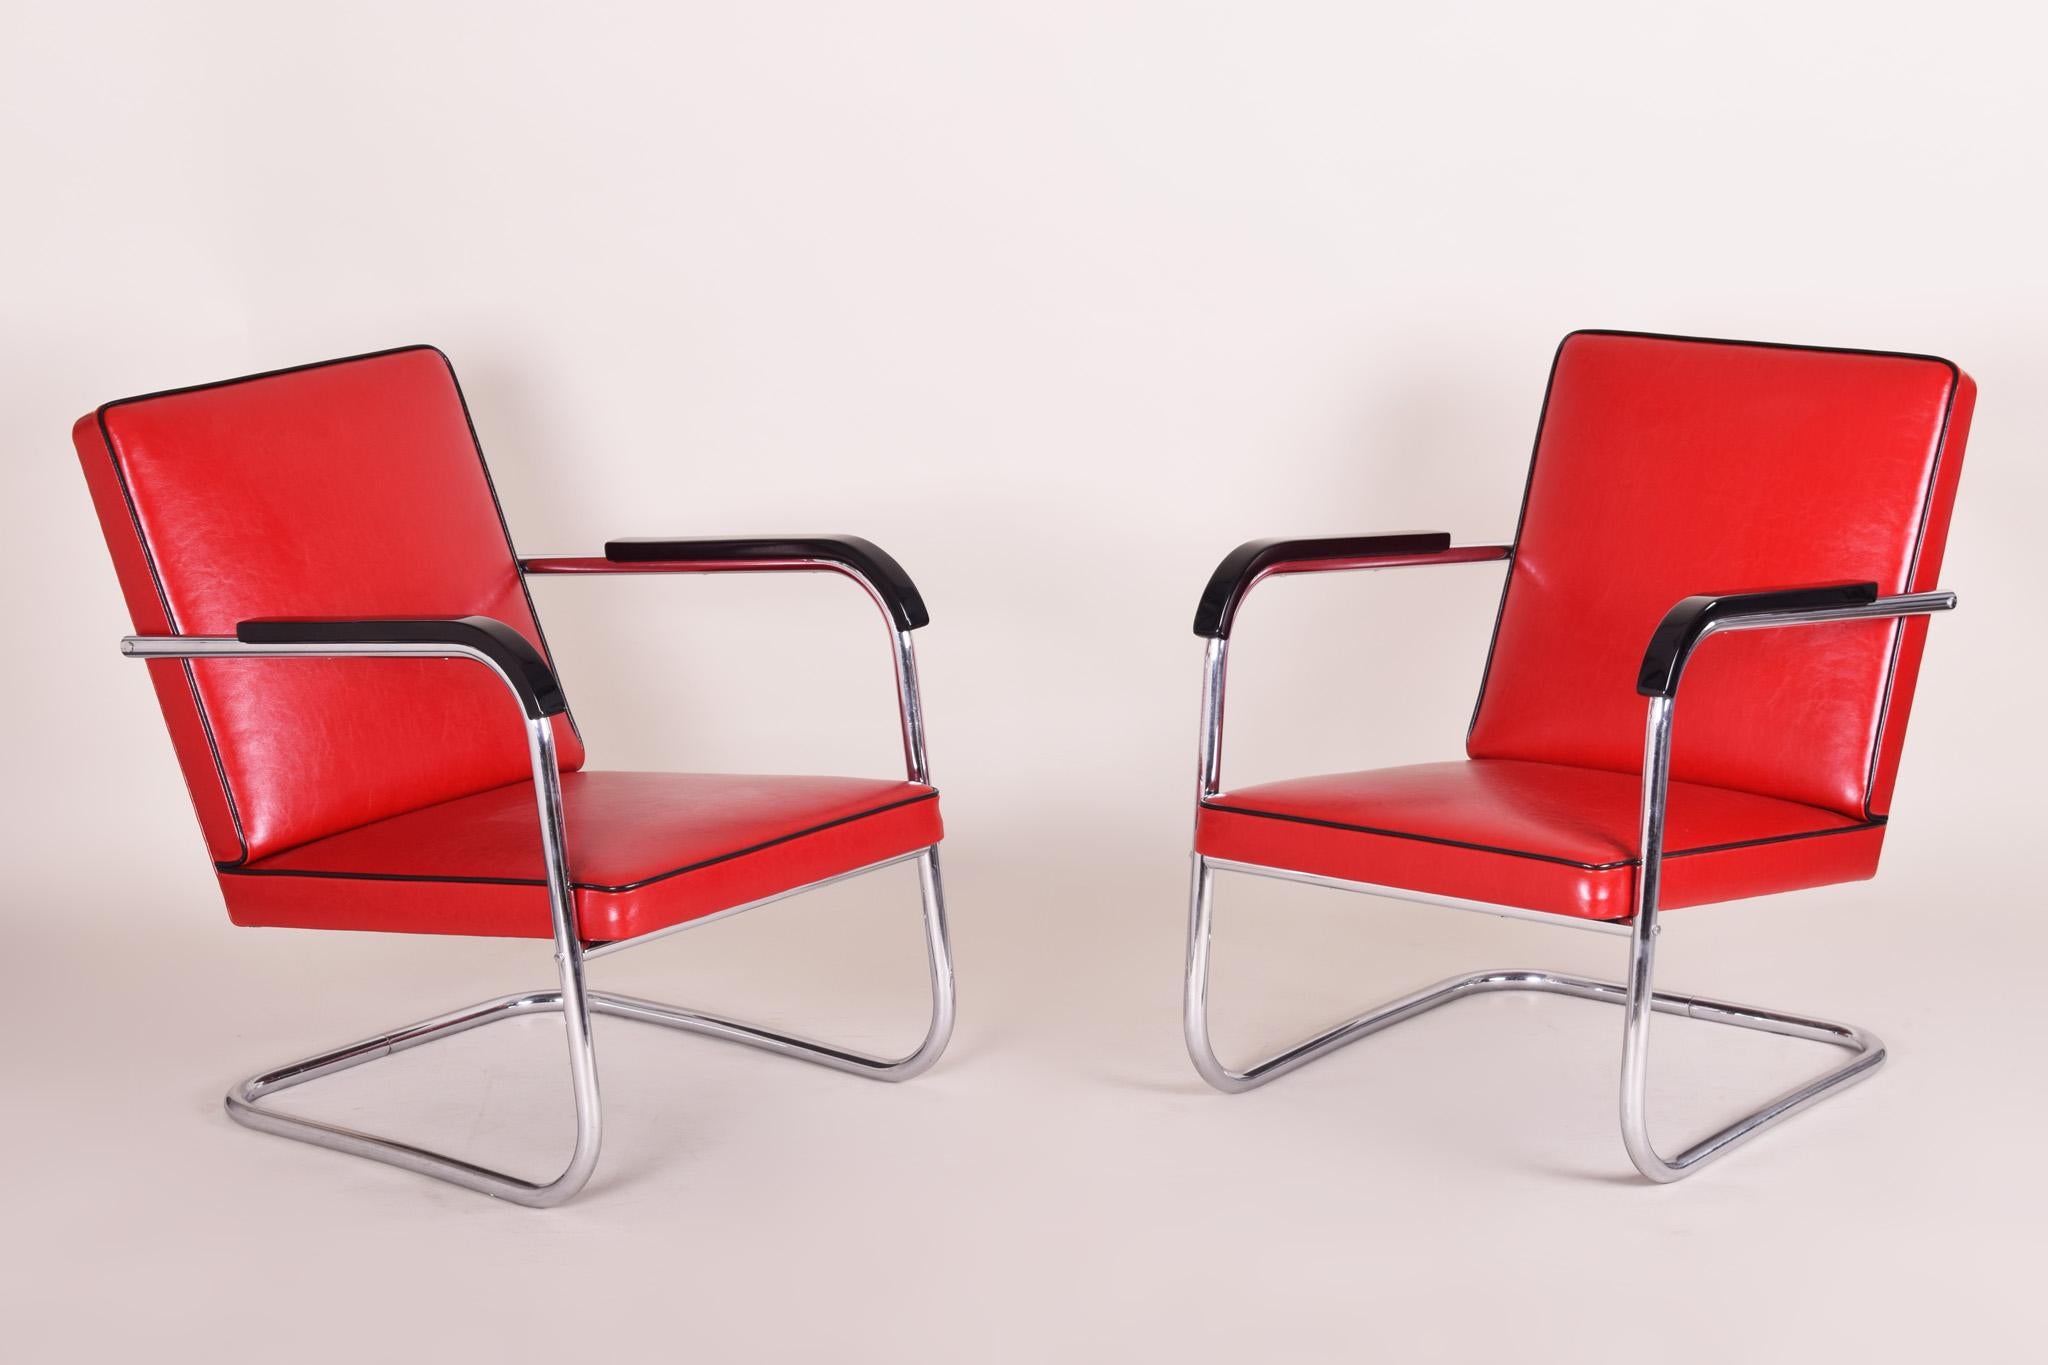 Ein Paar rote Bauhaus-Sessel aus hochwertigem Leder und verchromtem Stahl.
Hergestellt in den 30er Jahren in Deutschland von Thonet und entworfen von Anton Lorenz.
Vollständig von unserem Team restauriert.